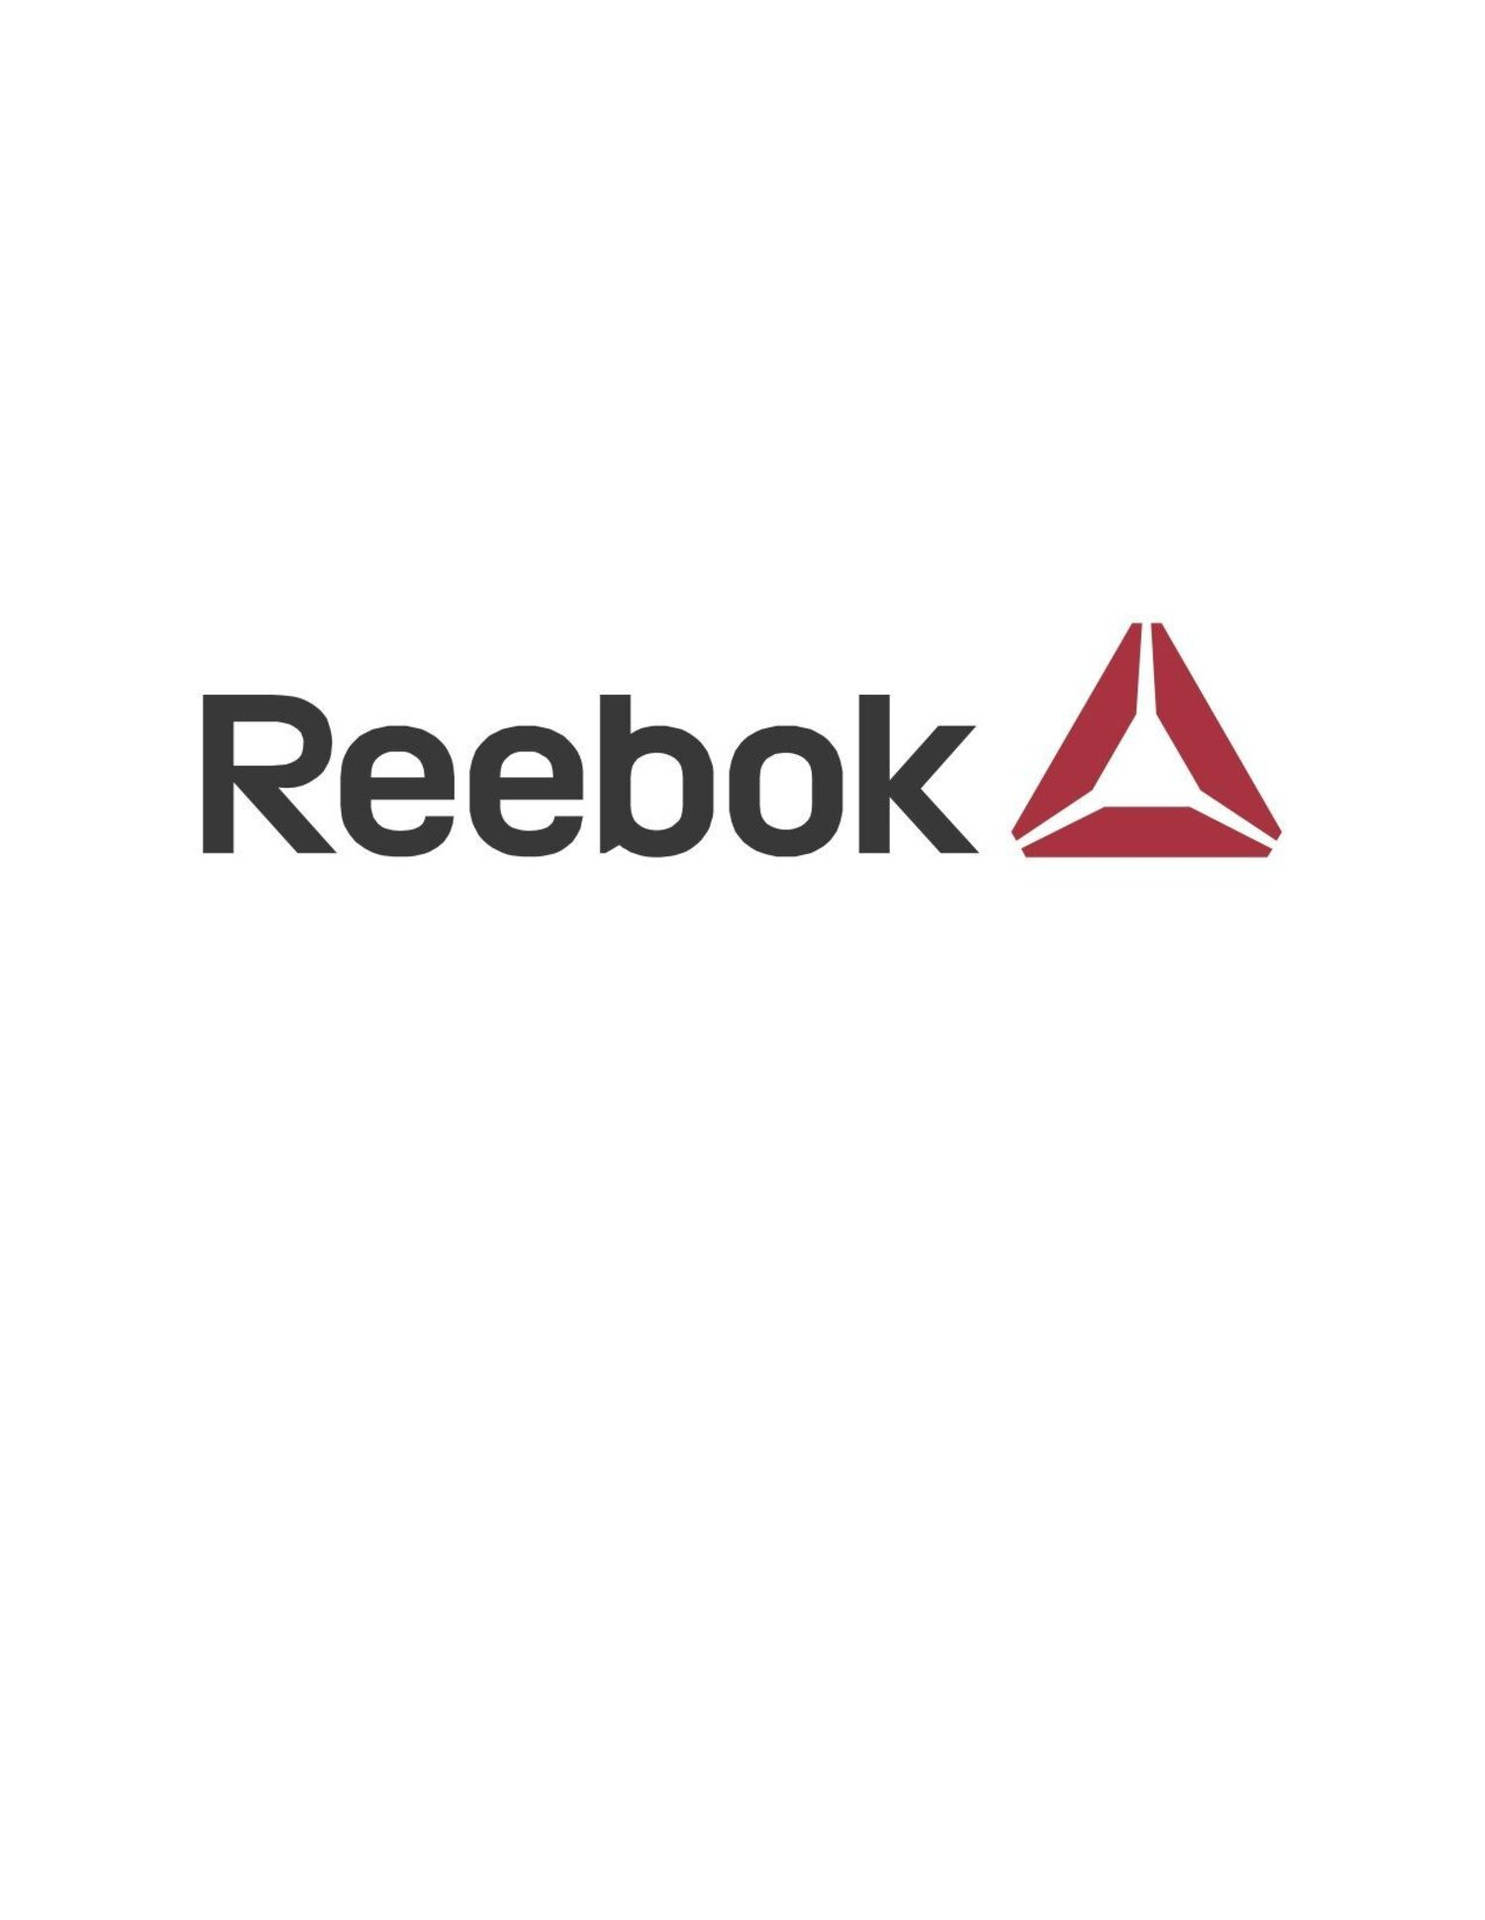 Reebok Delta Logo Telefon Wallpaper